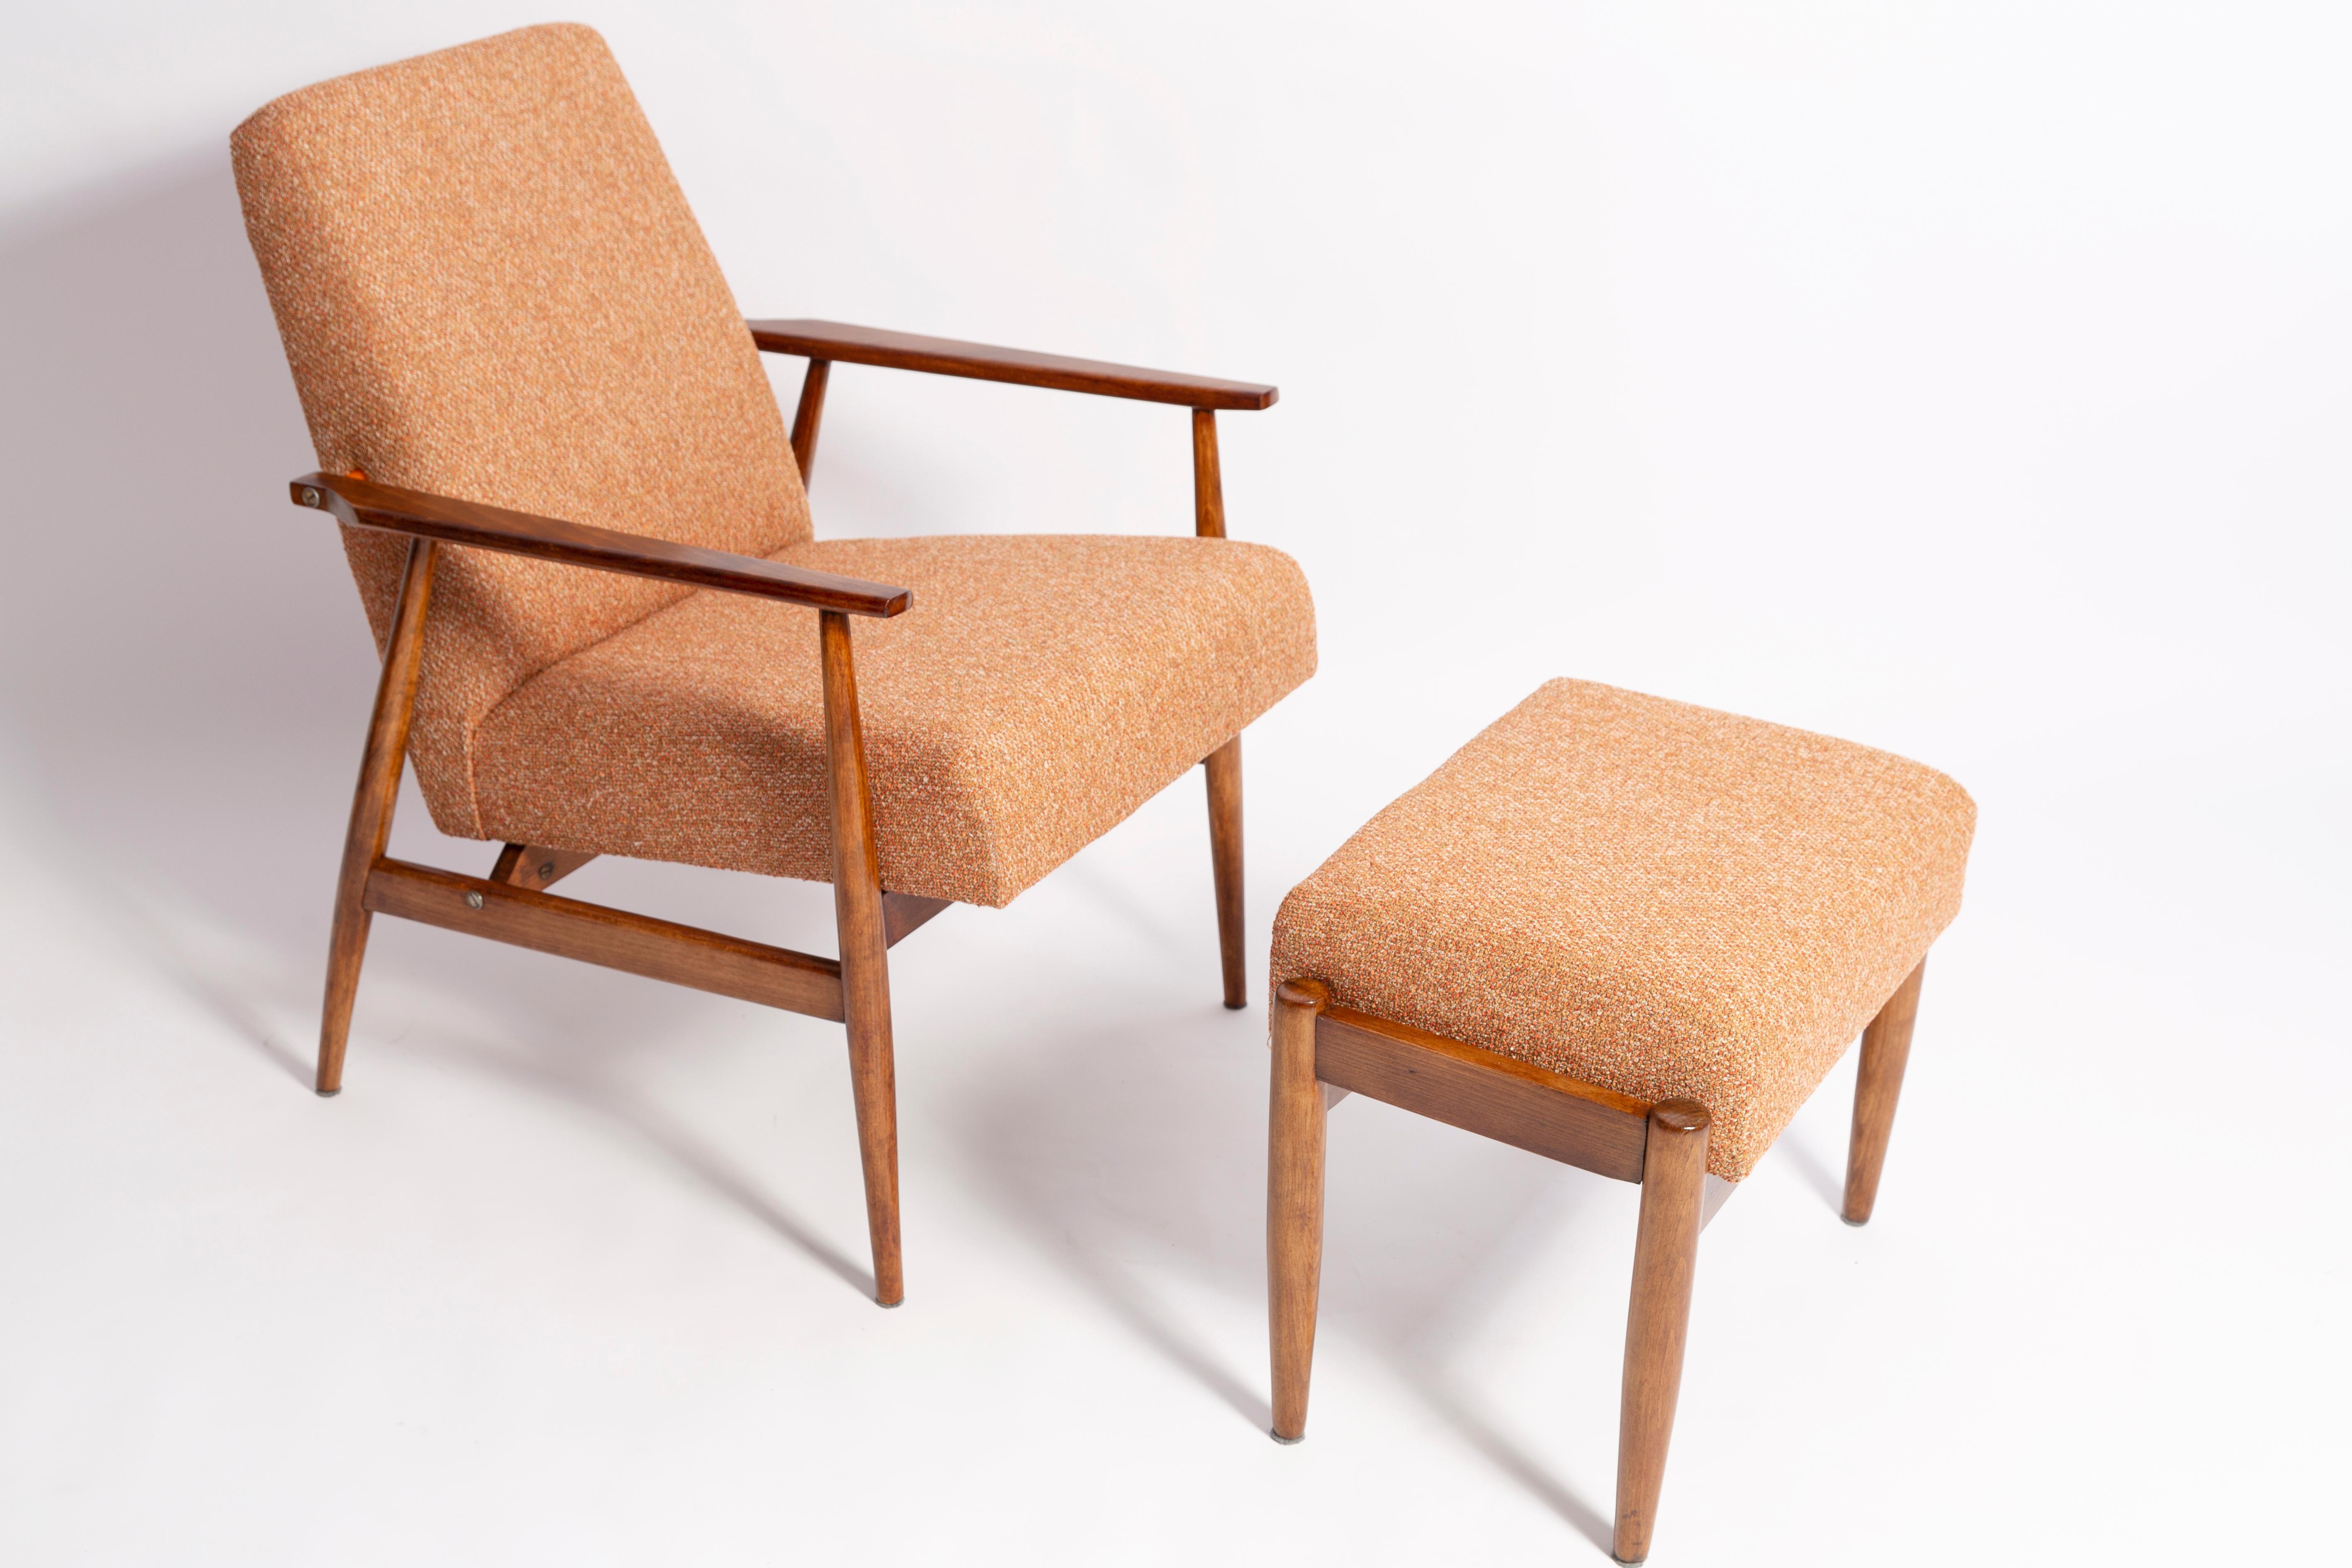 Un beau fauteuil restauré, conçu par Henryk Lis. Meubles après une rénovation complète de la menuiserie et de la tapisserie. Le tissu, qui recouvre le dossier et l'assise, est un revêtement mélangé italien de haute qualité de couleur orange. Le